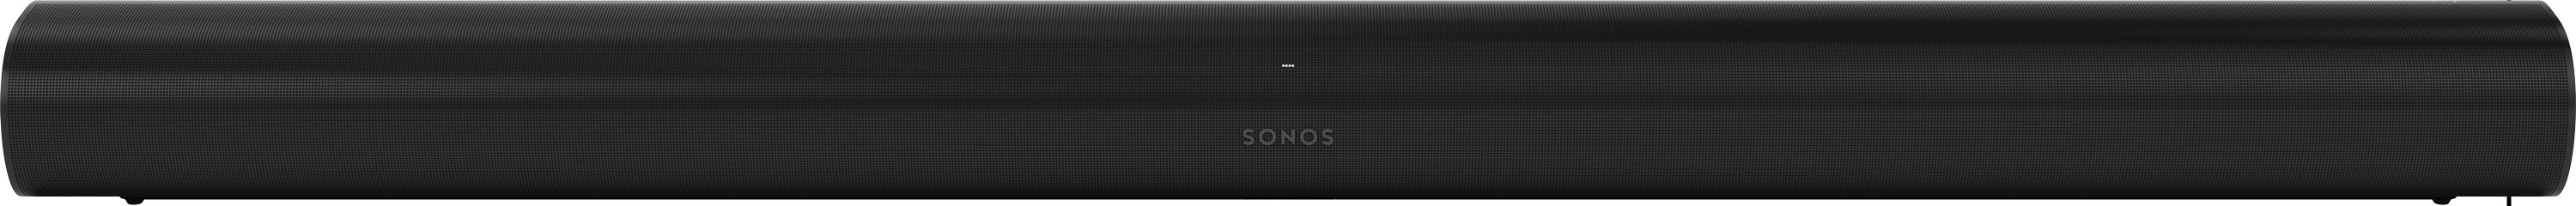 Sonos Arc Review